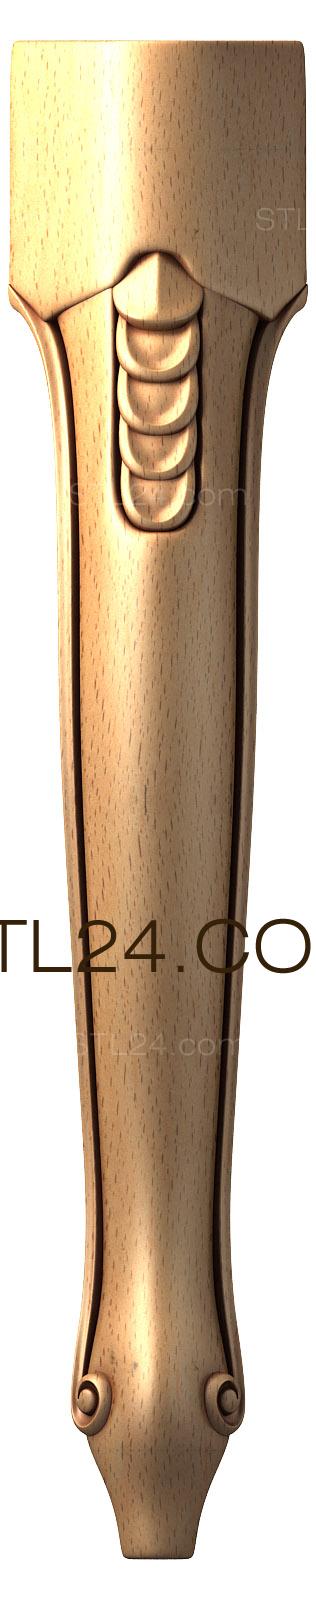 Ножки (NJ_0179) 3D модель для ЧПУ станка